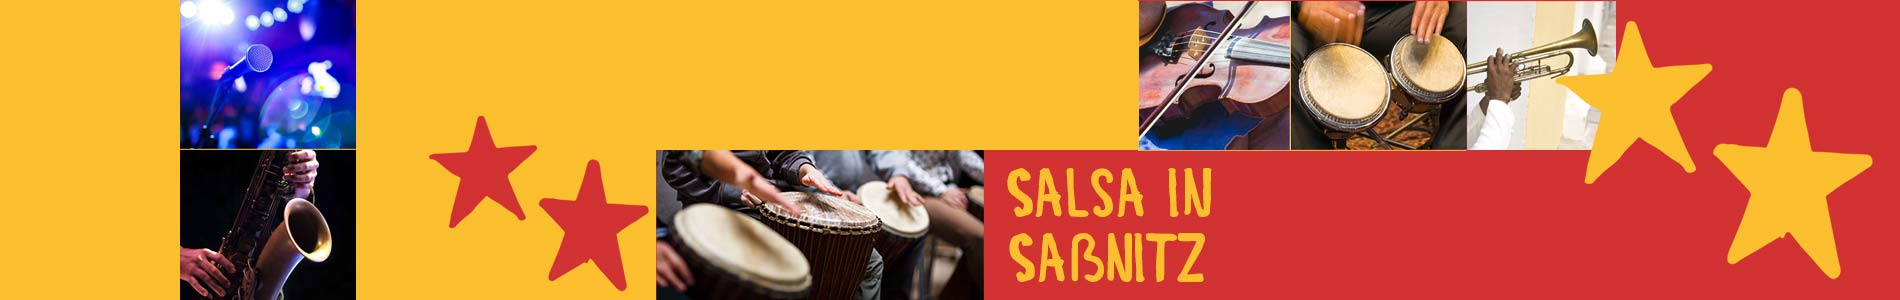 Salsa in Saßnitz – Salsa lernen und tanzen, Tanzkurse, Partys, Veranstaltungen